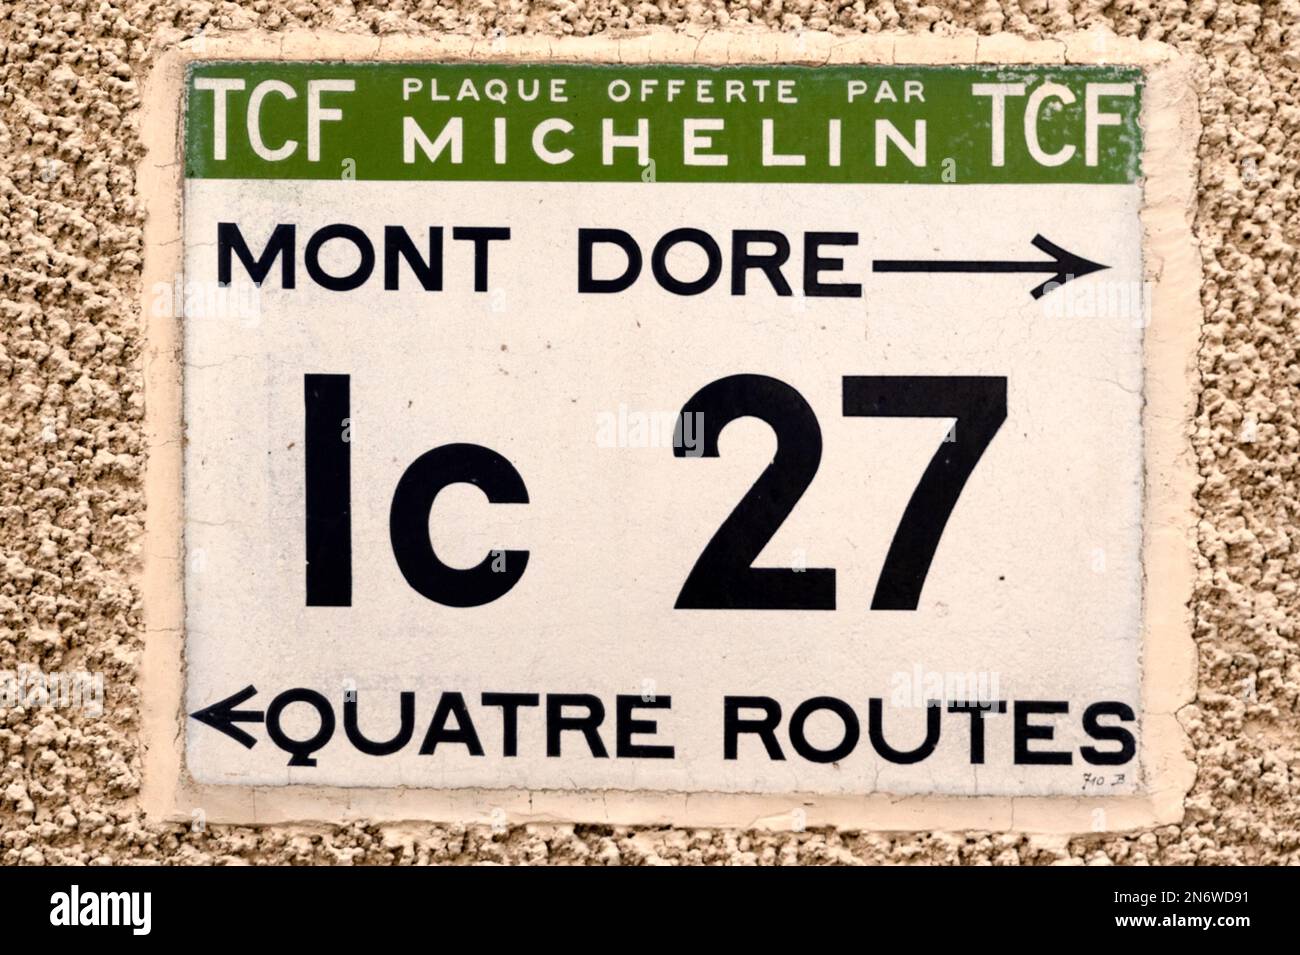 Marque historique de route française par Michelin Preserver à Orcival en Auvergne, France Banque D'Images